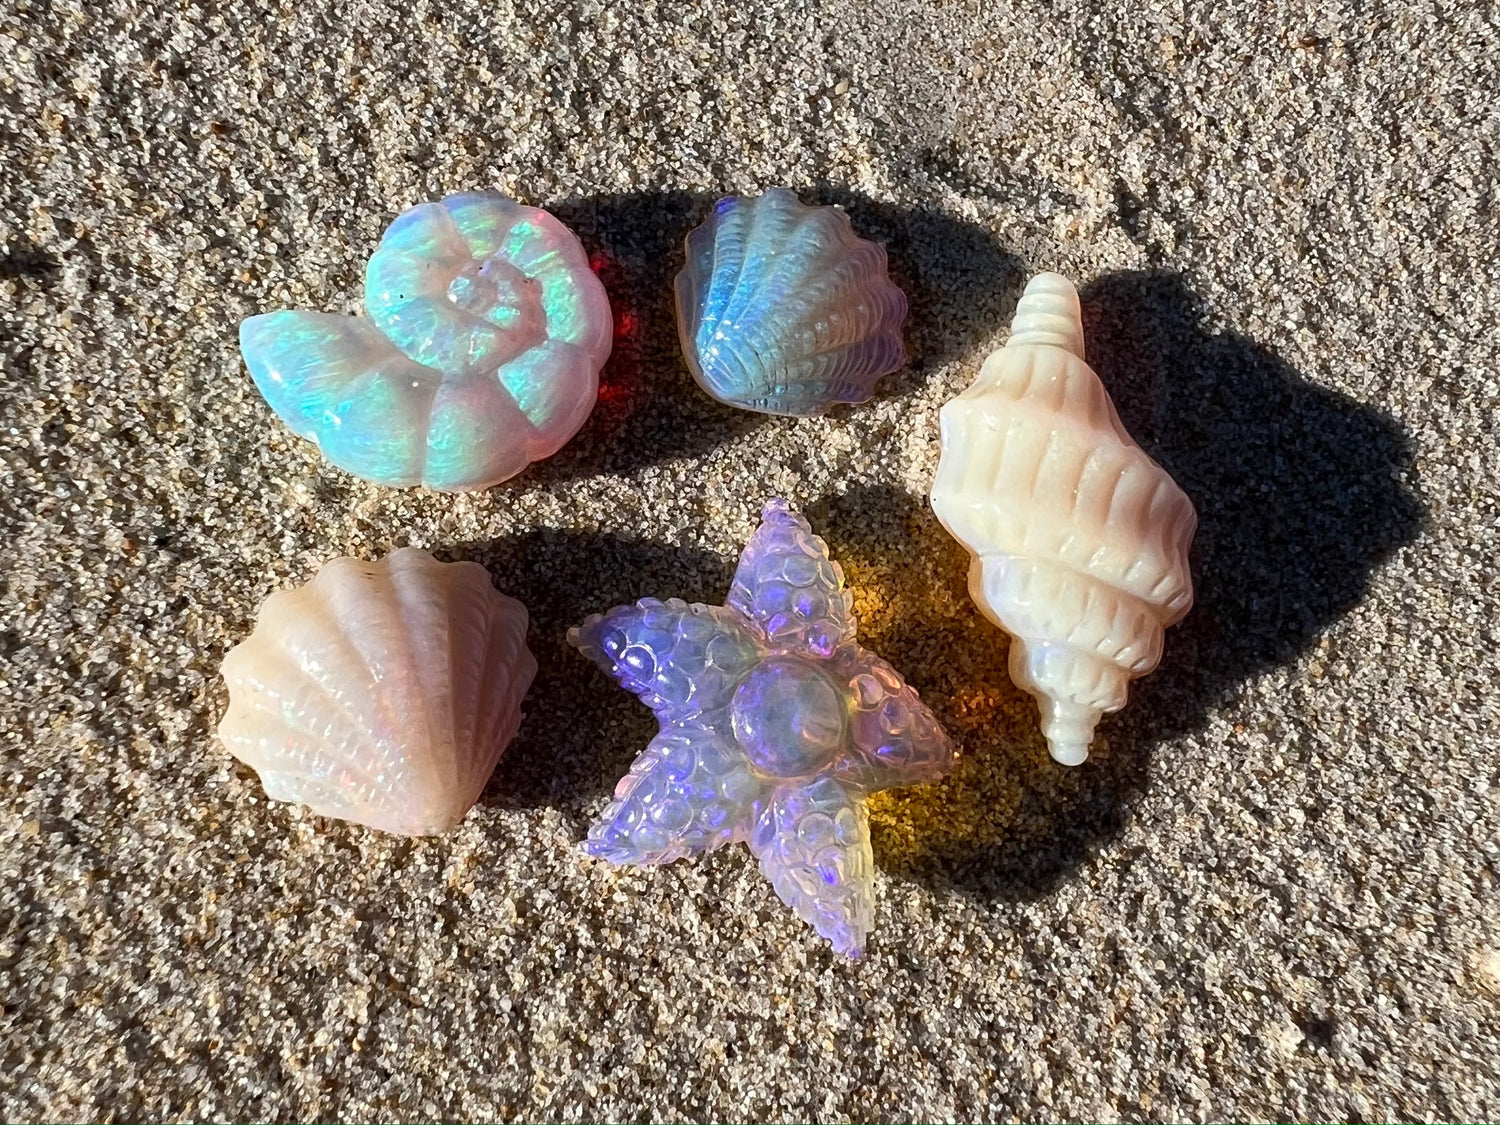 Shells, starfish and spirals